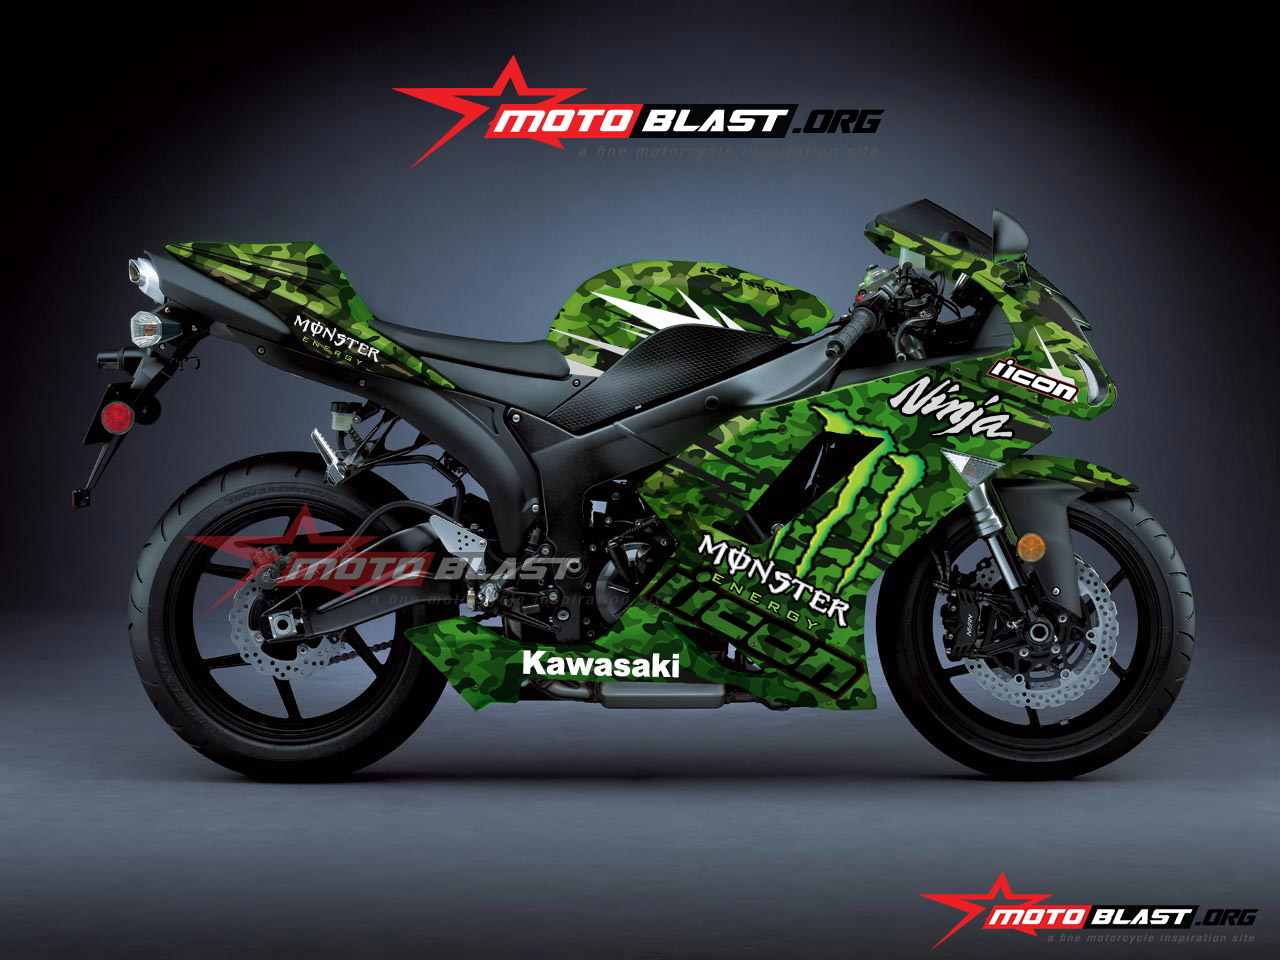 Kawasaki Ninja Monster 1000